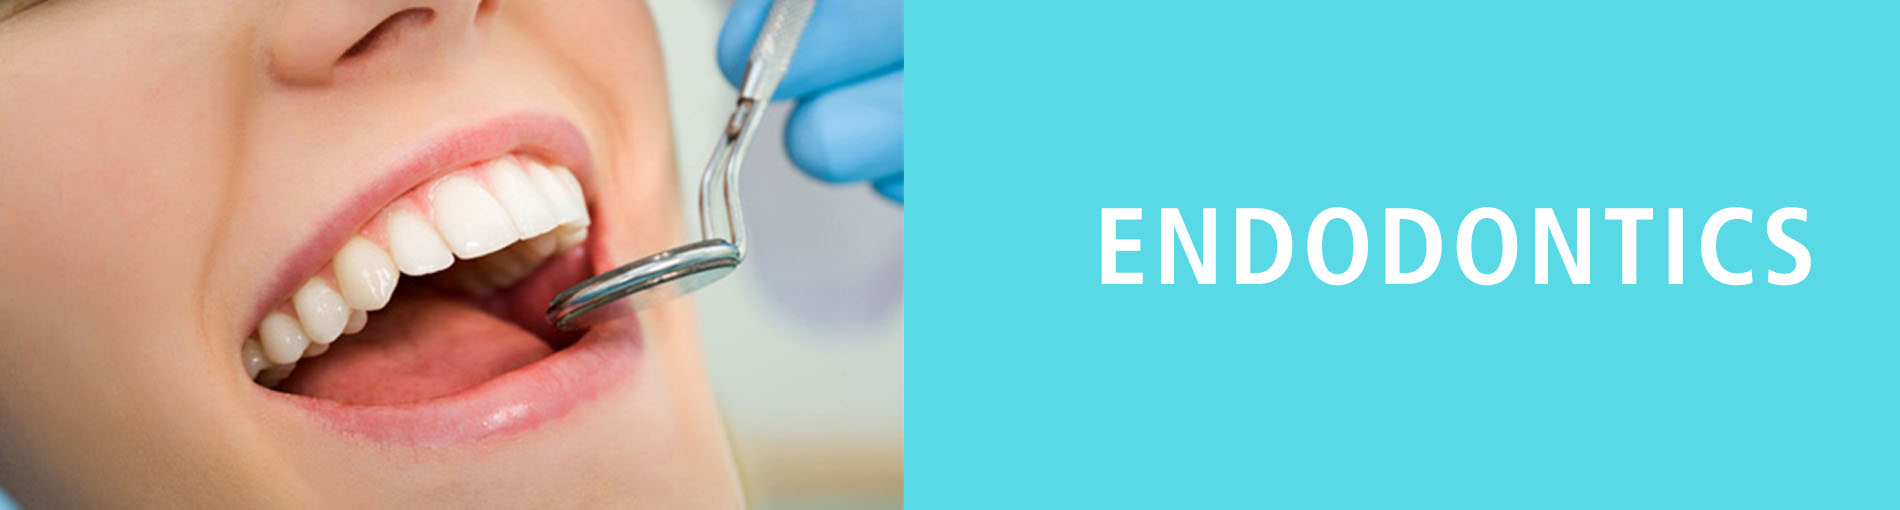 Endodontics-Care-Specialist-Dentist-Smile-White-smile-Healthy-smile-Patient-Success